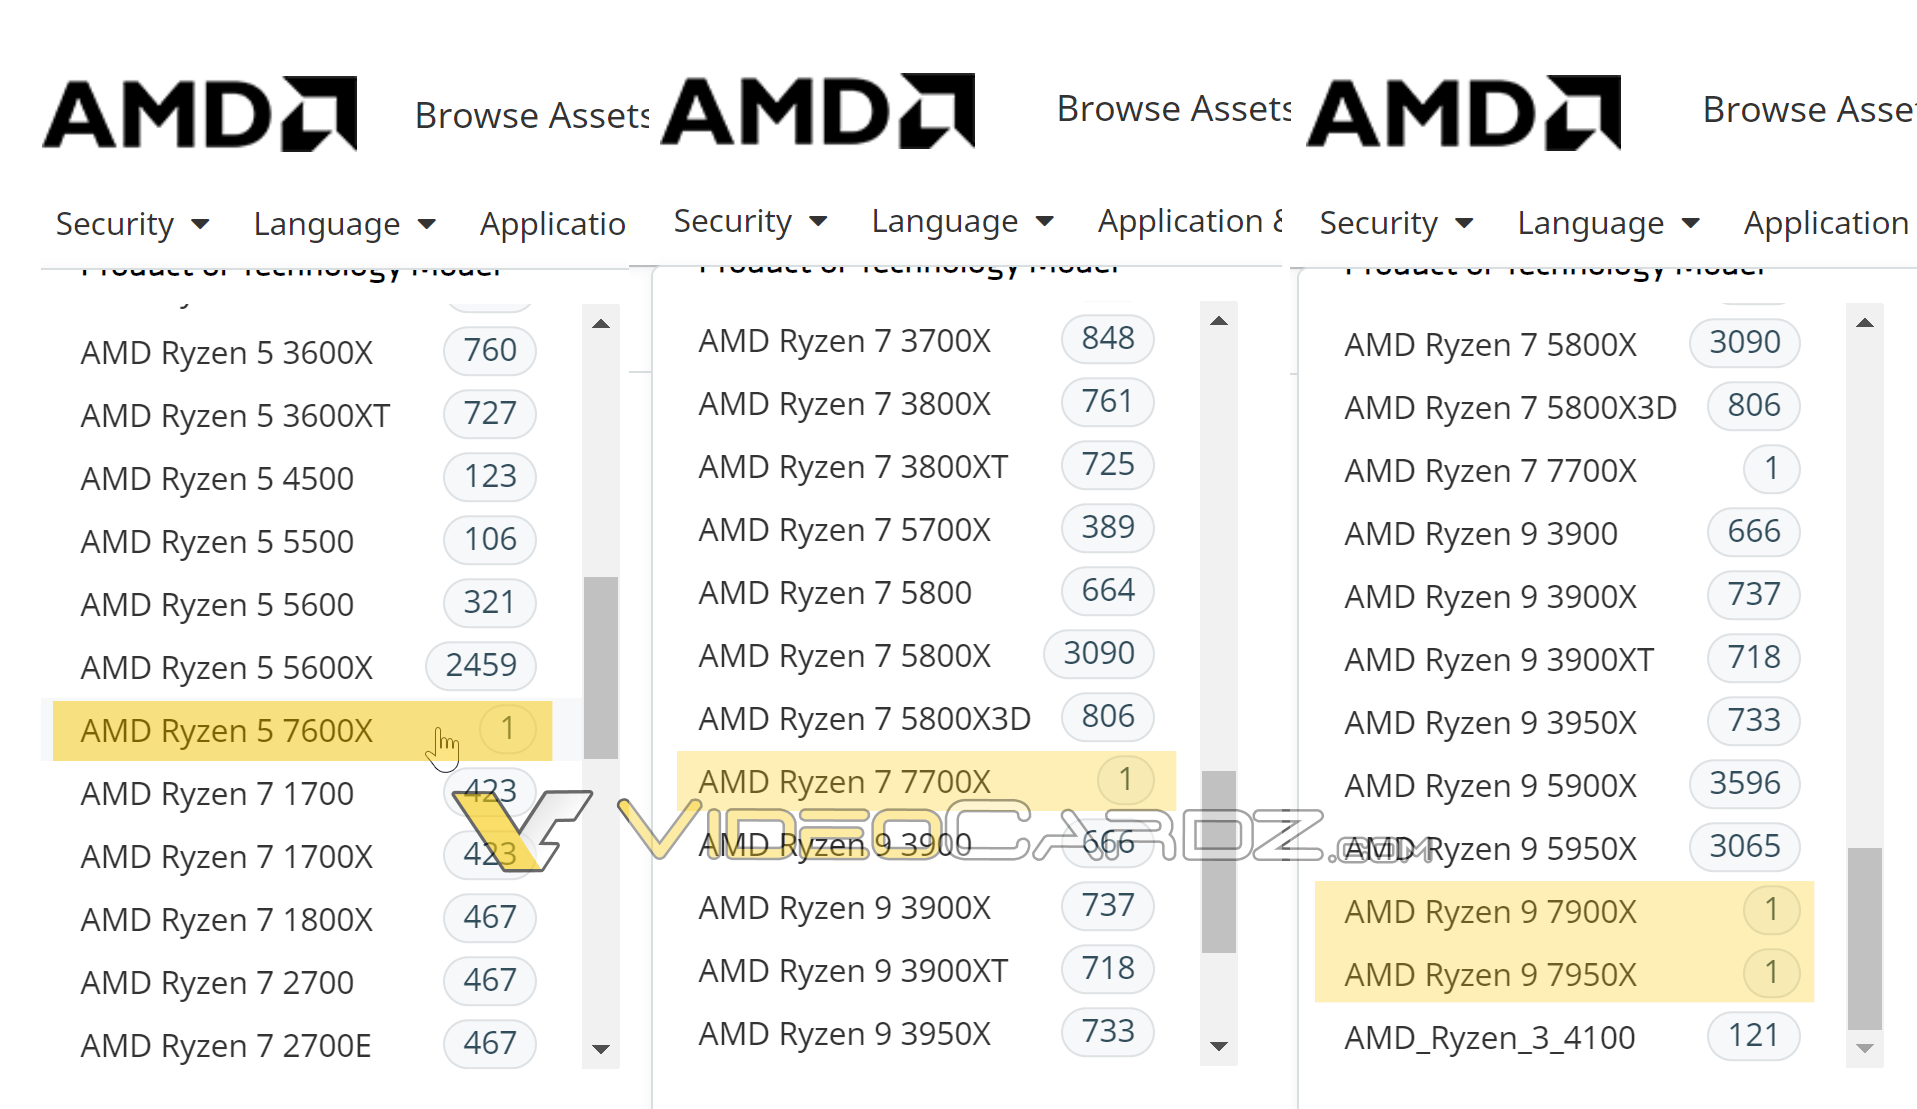 AMD Ryzen 9 7950X, Ryzen 9 7900X, Ryzen 7 7700X, Ryzen 5 7600X